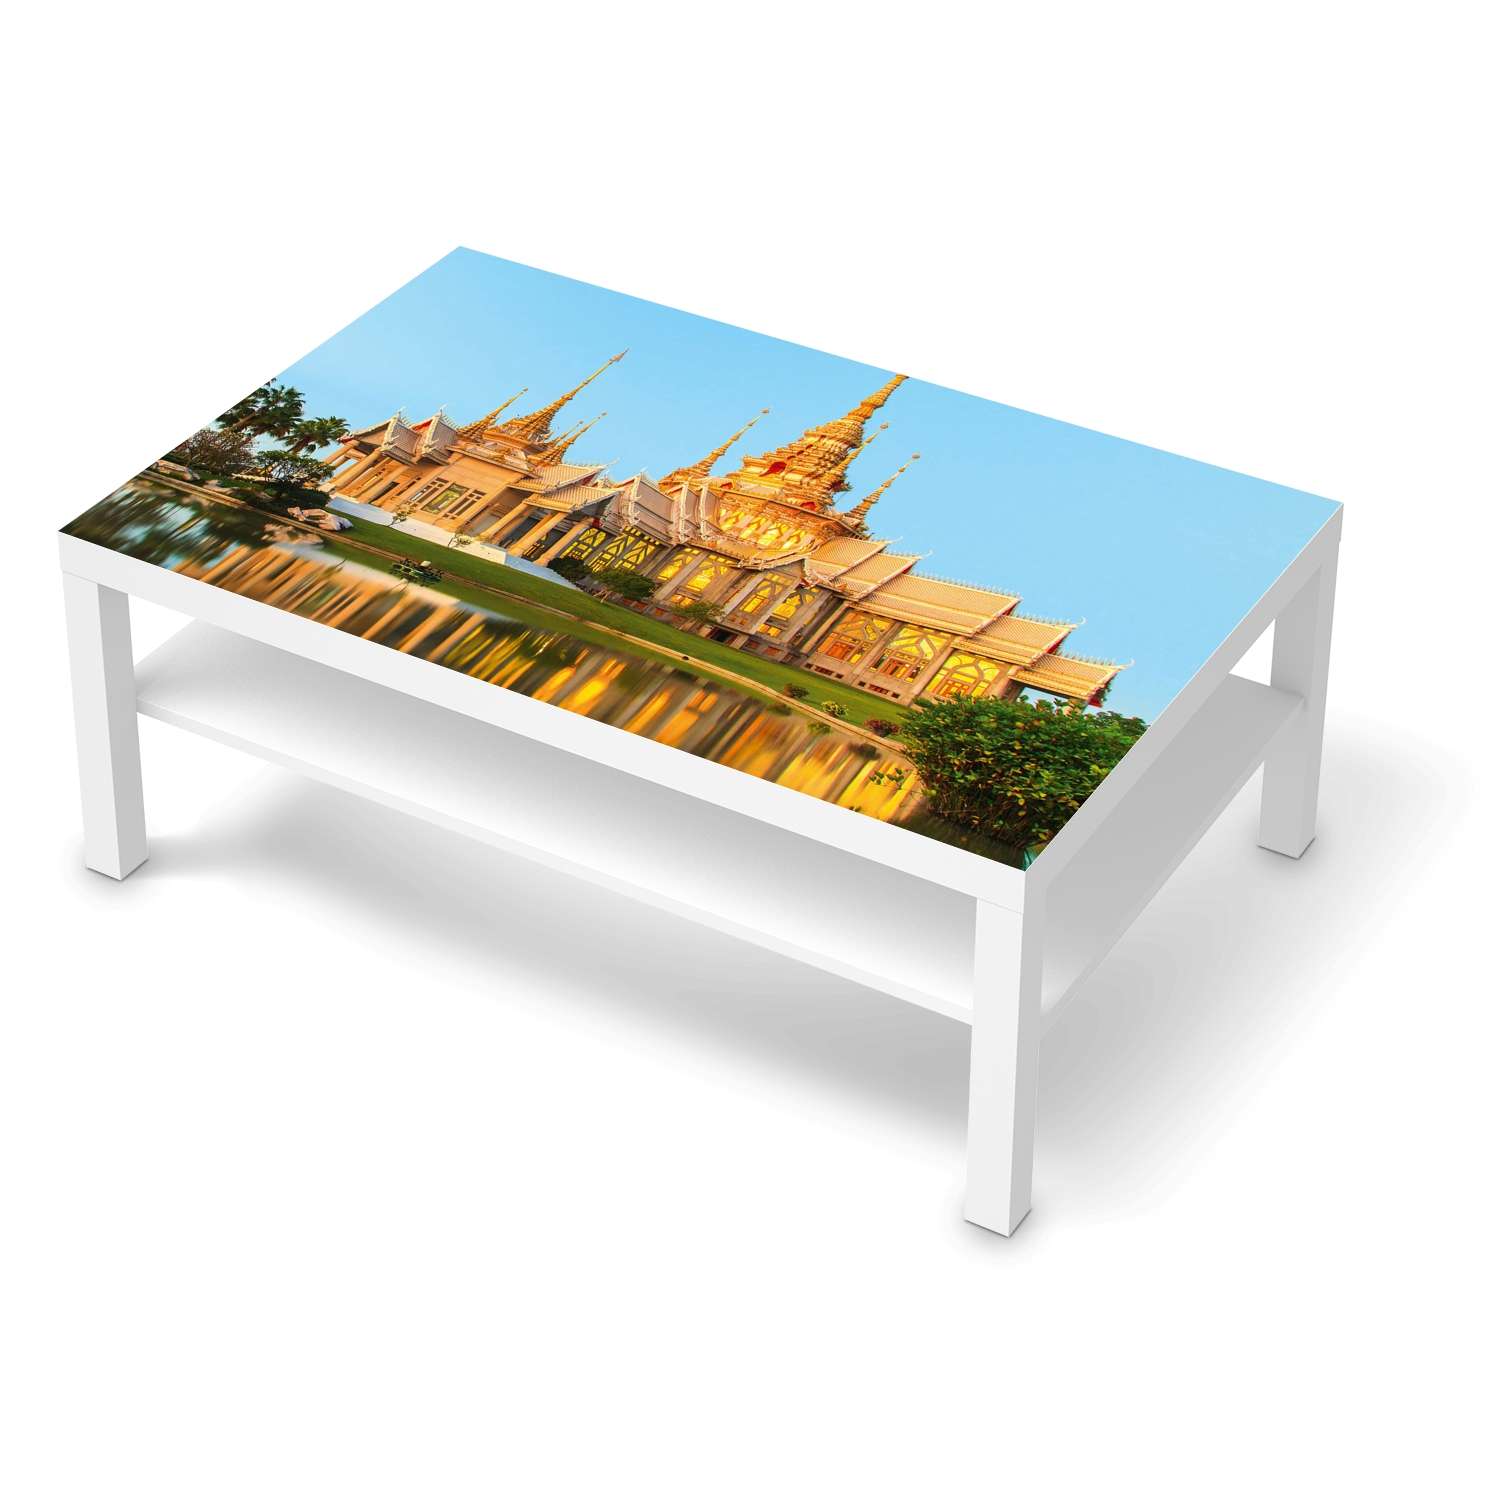 Klebefolie IKEA Lack Tisch 118x78 cm - Design: Thailand Temple von creatisto